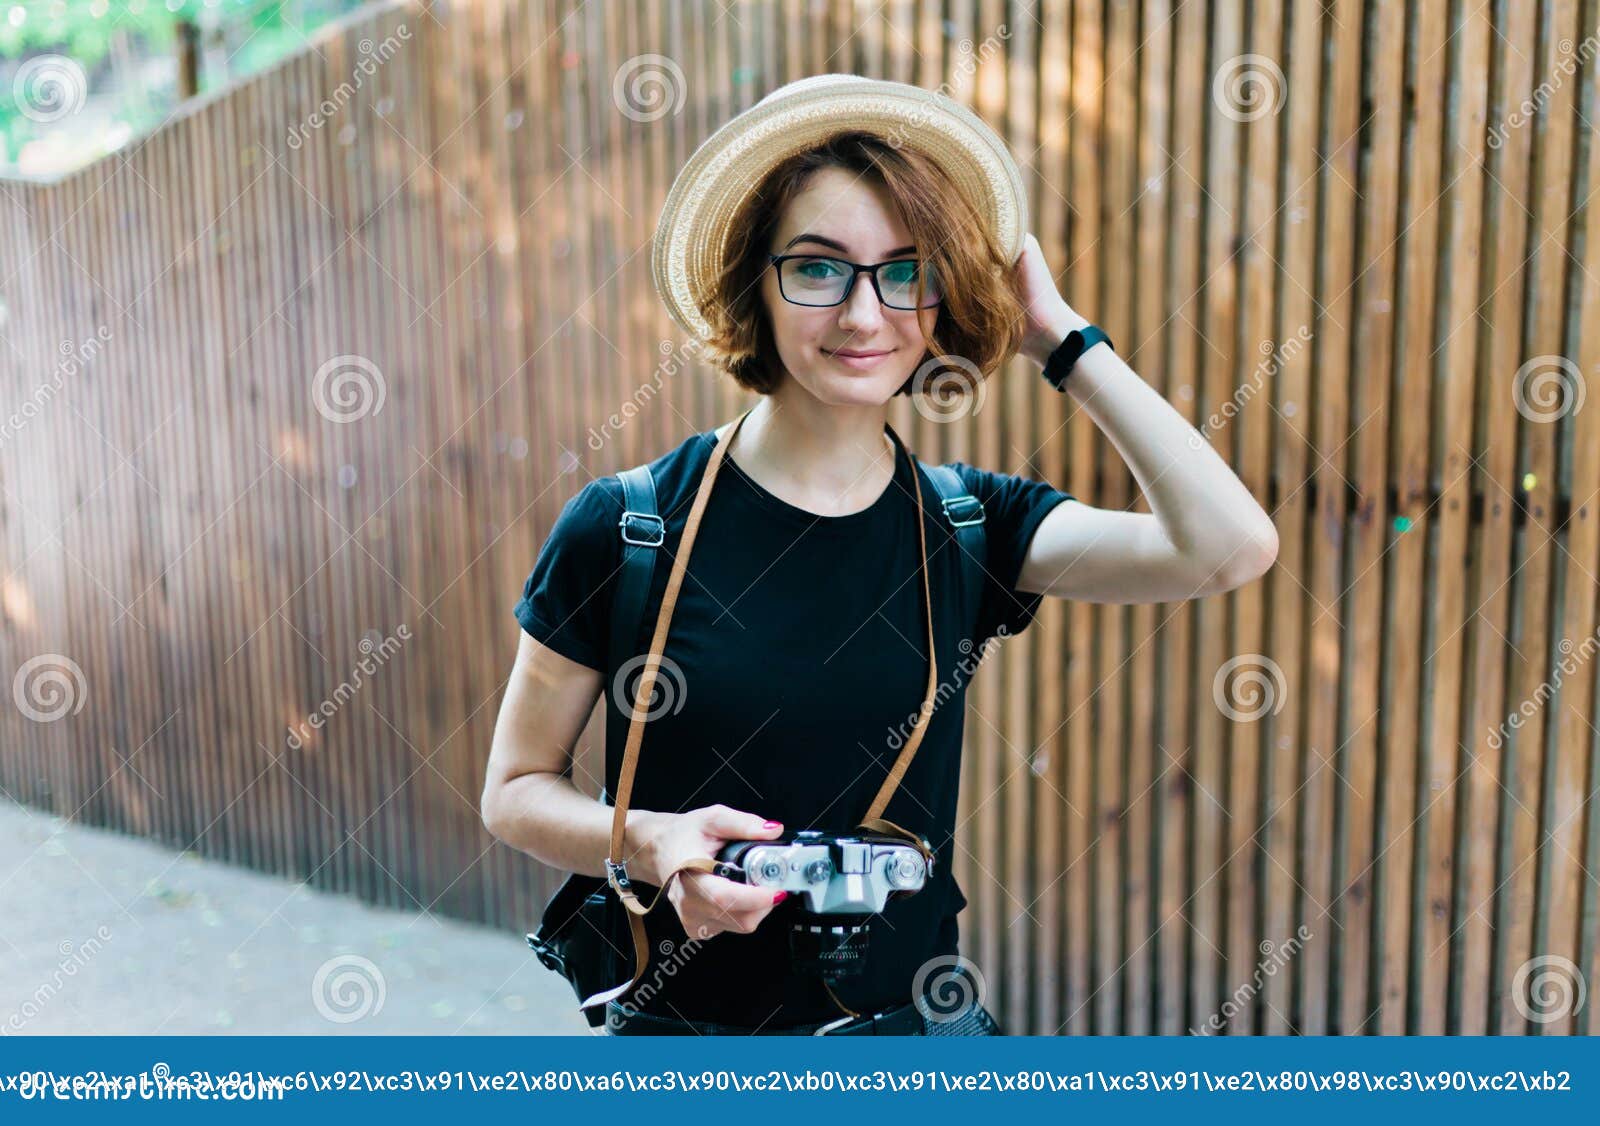 Disminución Expulsar a cápsula Mujer hipster foto de archivo. Imagen de viejo, sombrero - 171145122